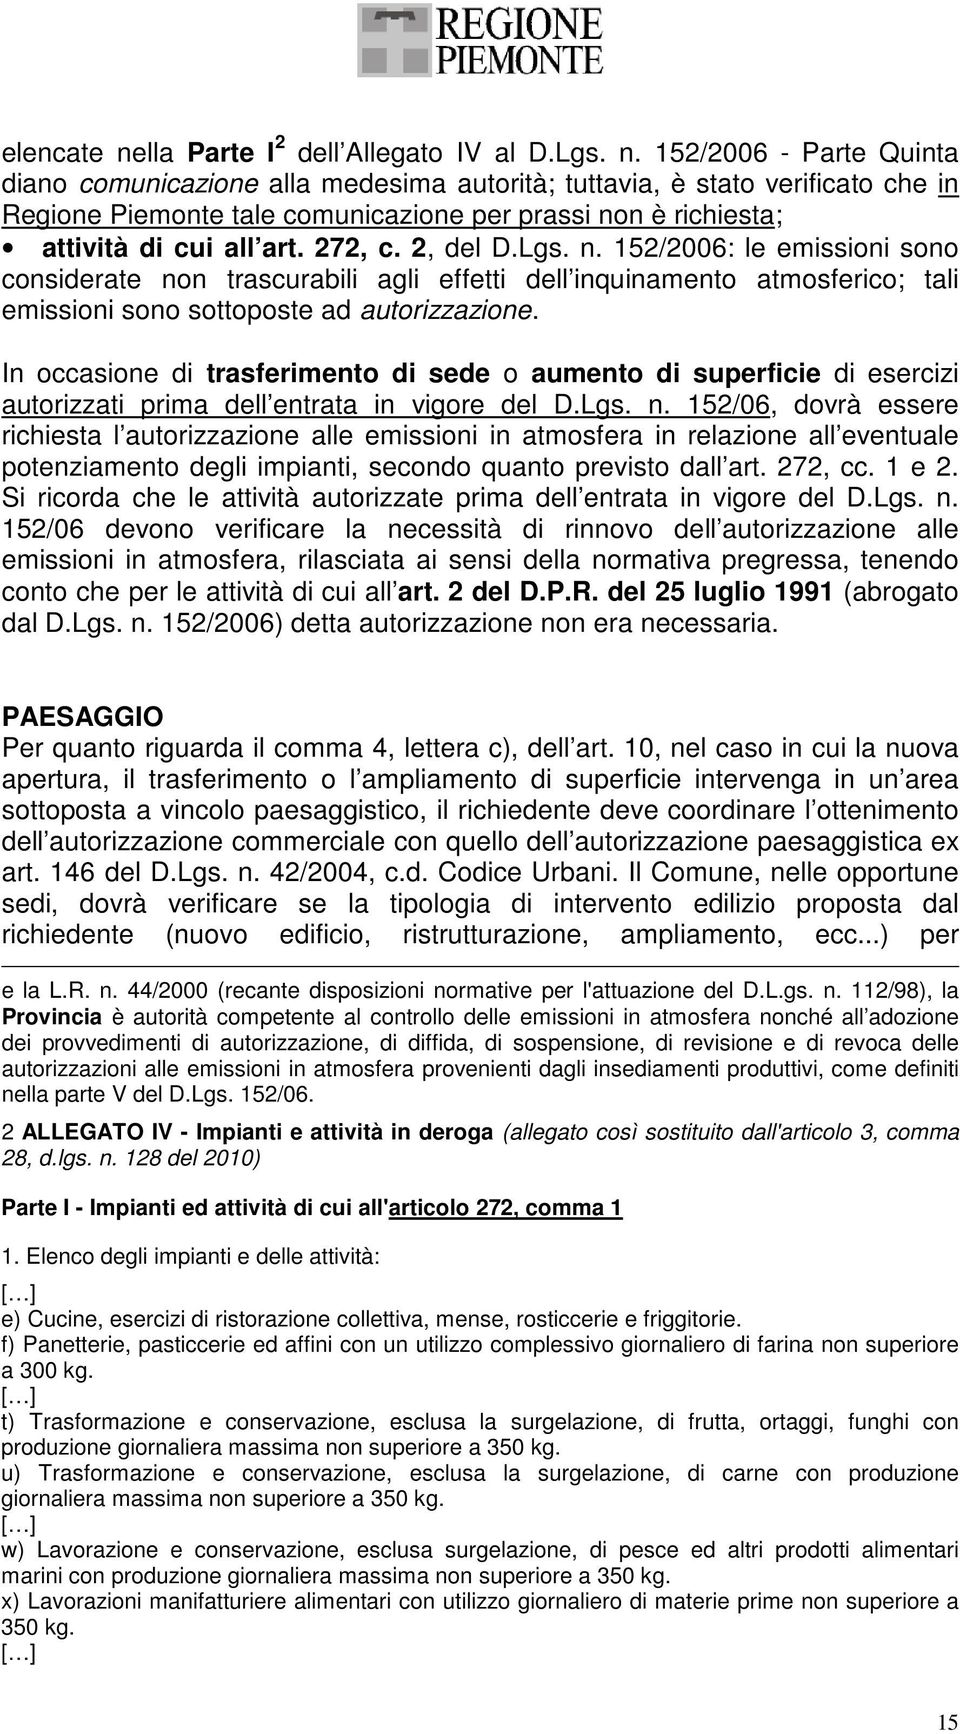 152/2006 - Parte Quinta diano comunicazione alla medesima autorità; tuttavia, è stato verificato che in Regione Piemonte tale comunicazione per prassi non è richiesta; attività di cui all art. 272, c.